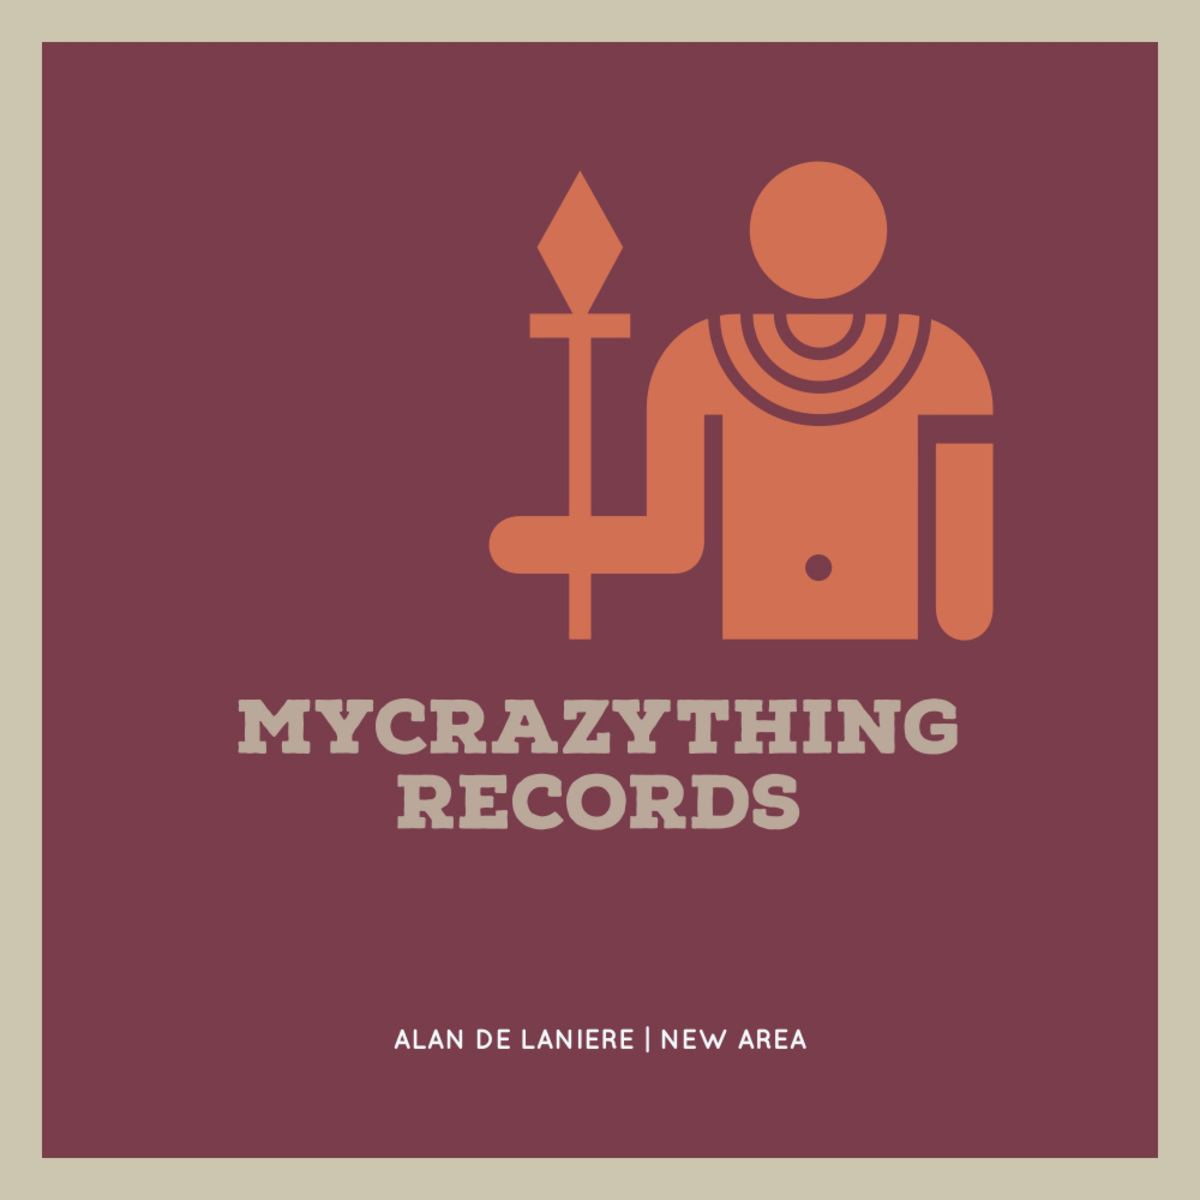 Alan De Laniere - New Area / Mycrazything Records